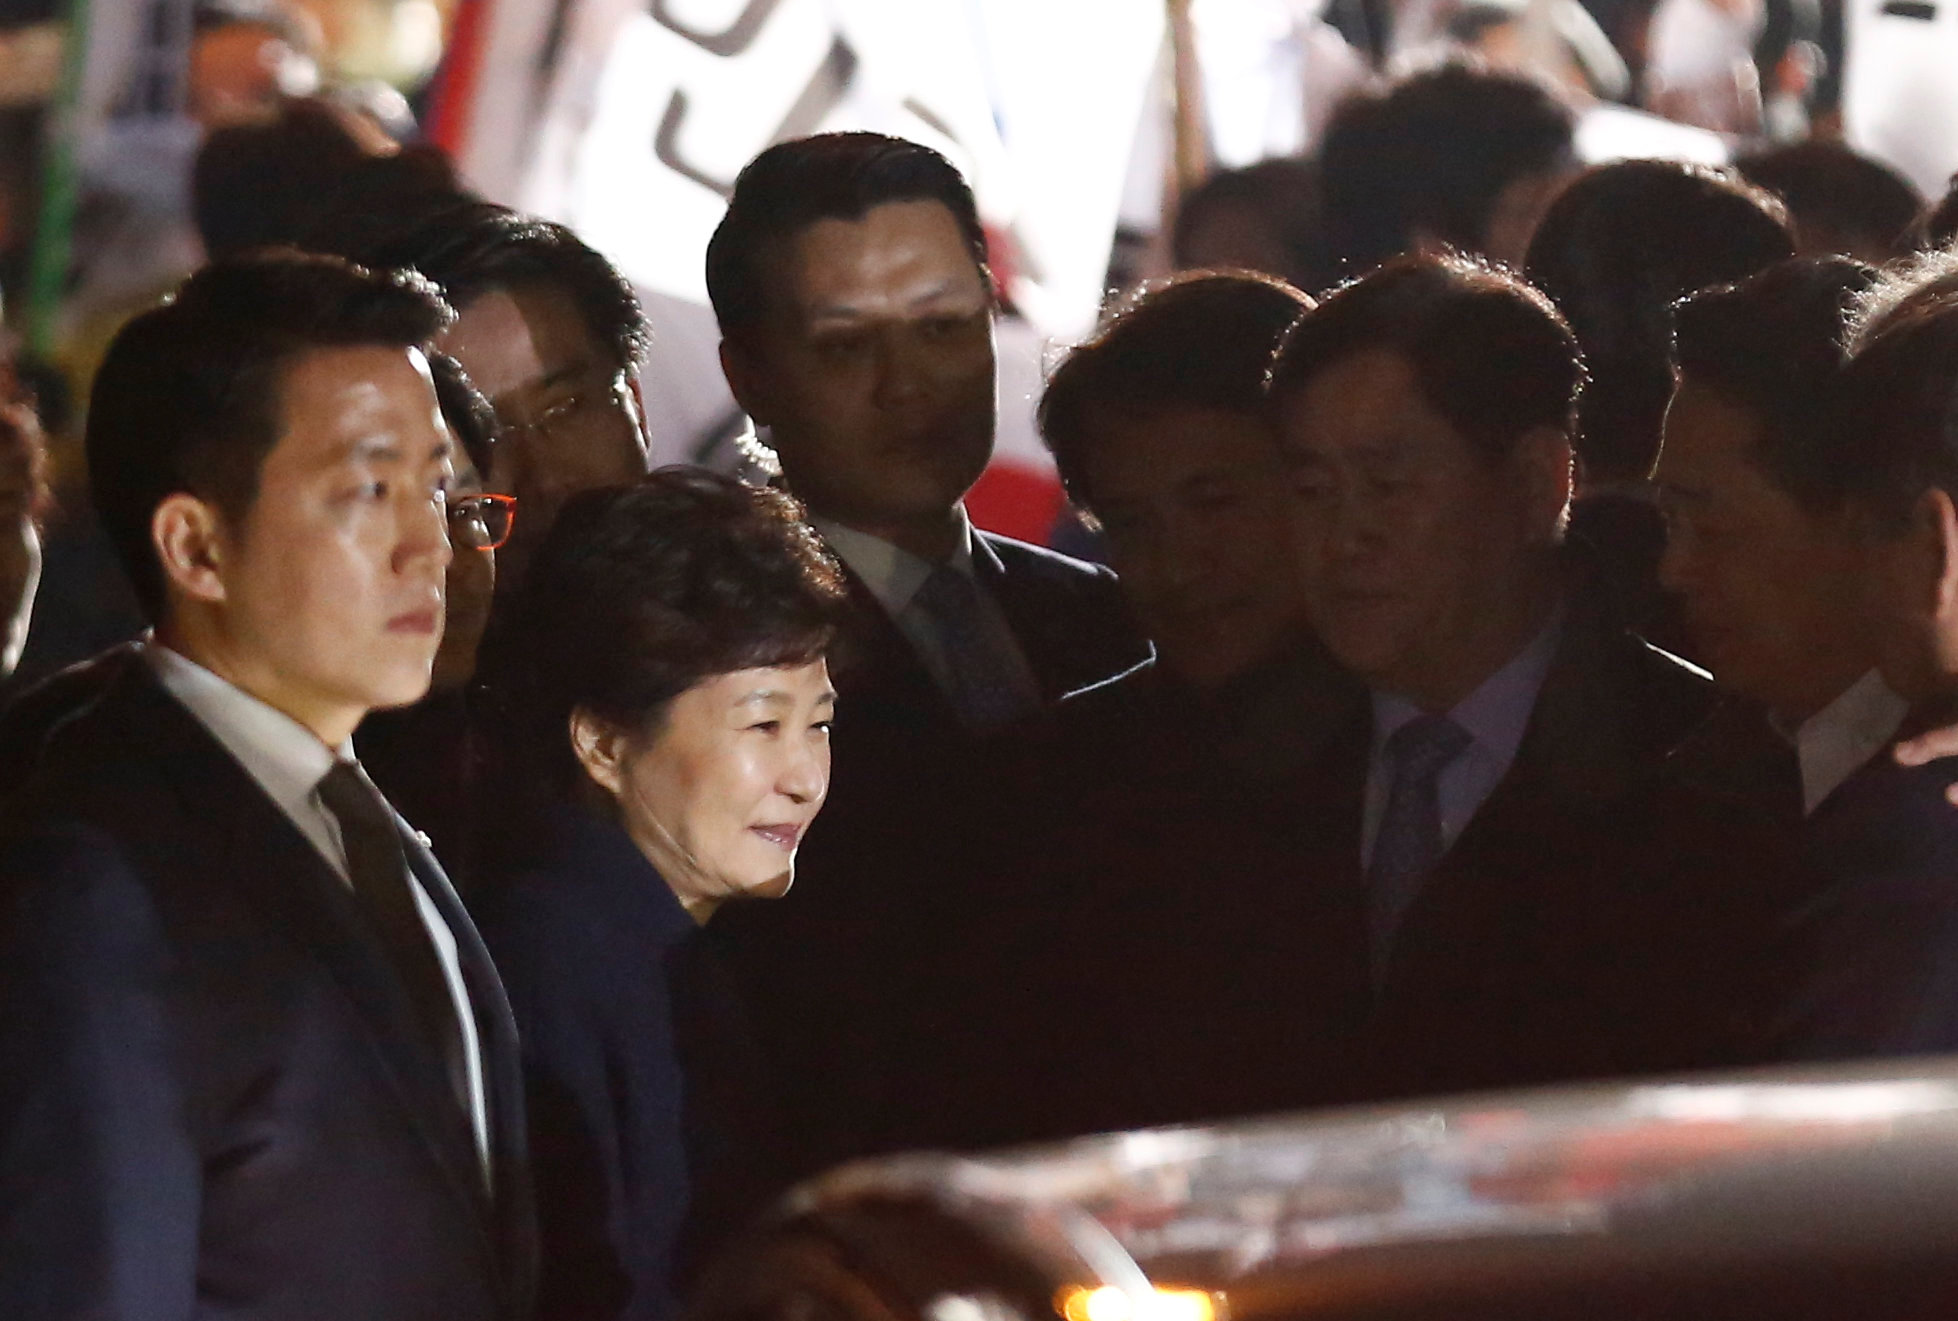 رئيسة كوريا الجنوبية المعزولة تغادر البيت الأزرق